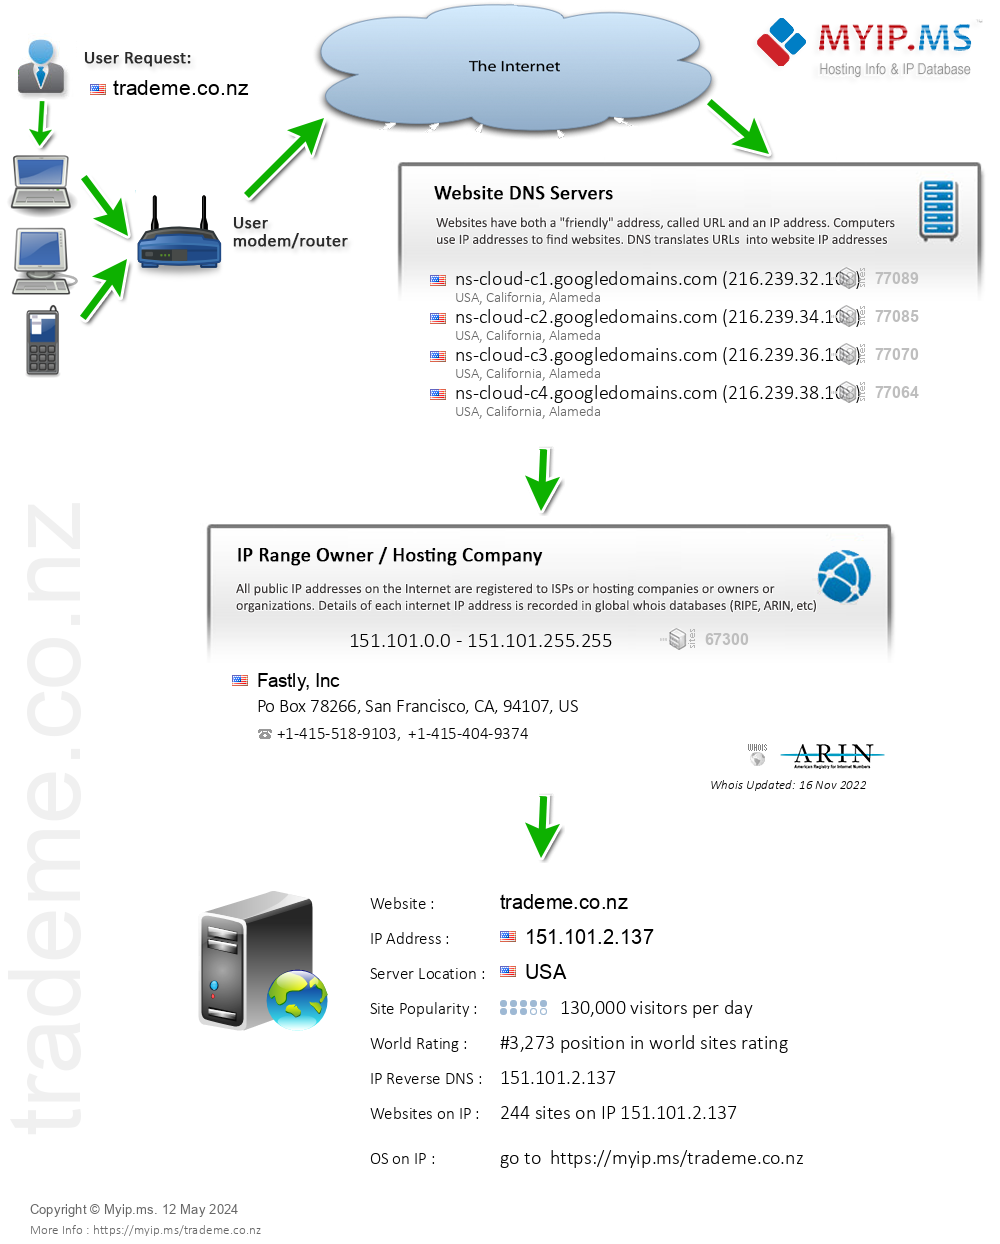 Trademe.co.nz - Website Hosting Visual IP Diagram